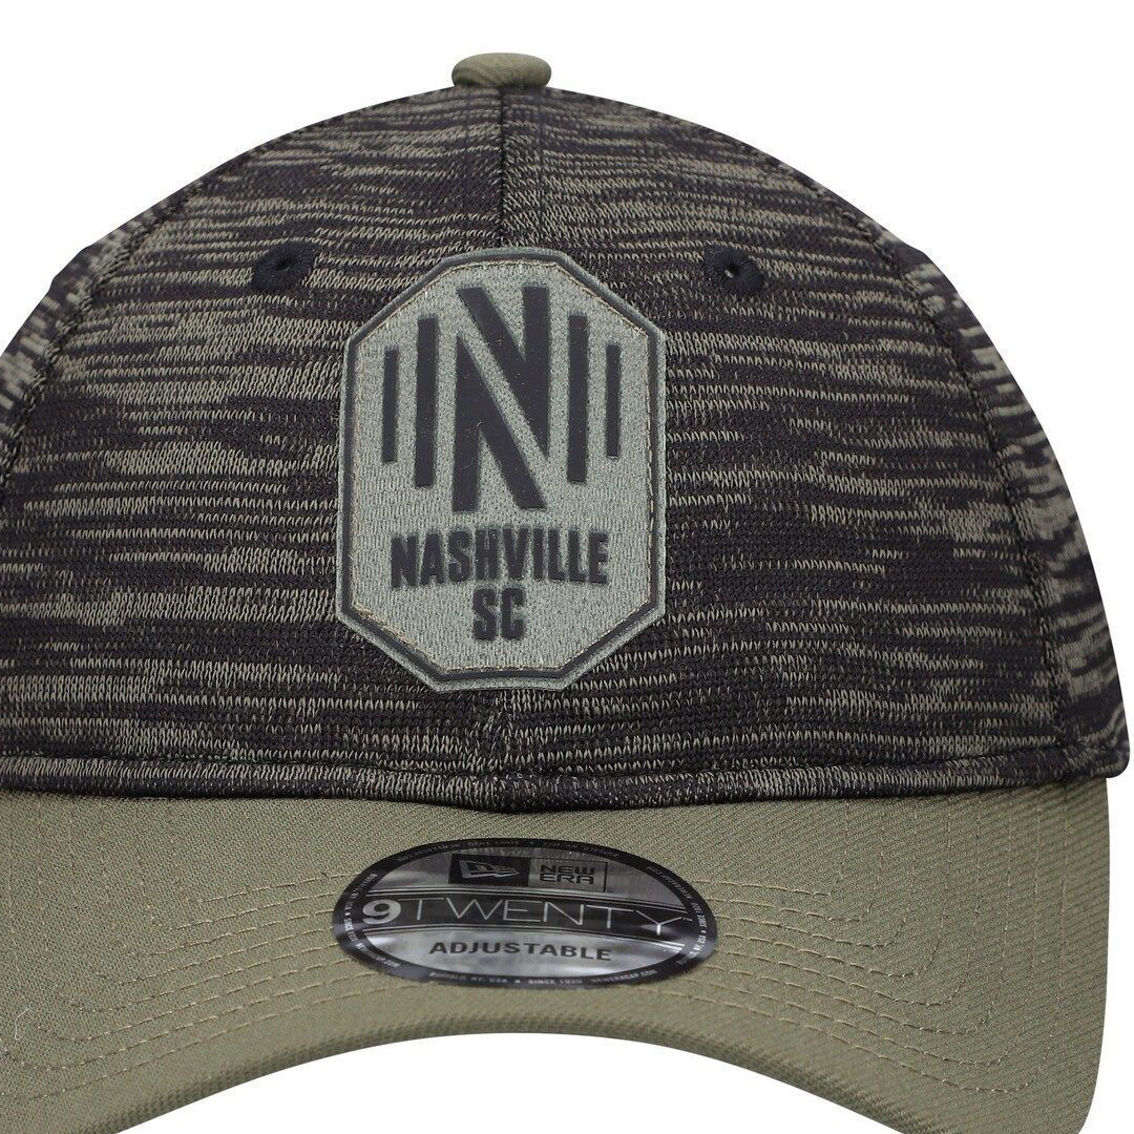 New Era Men's Olive Nashville SC Salute To Service 9TWENTY Adjustable Hat - Image 3 of 4